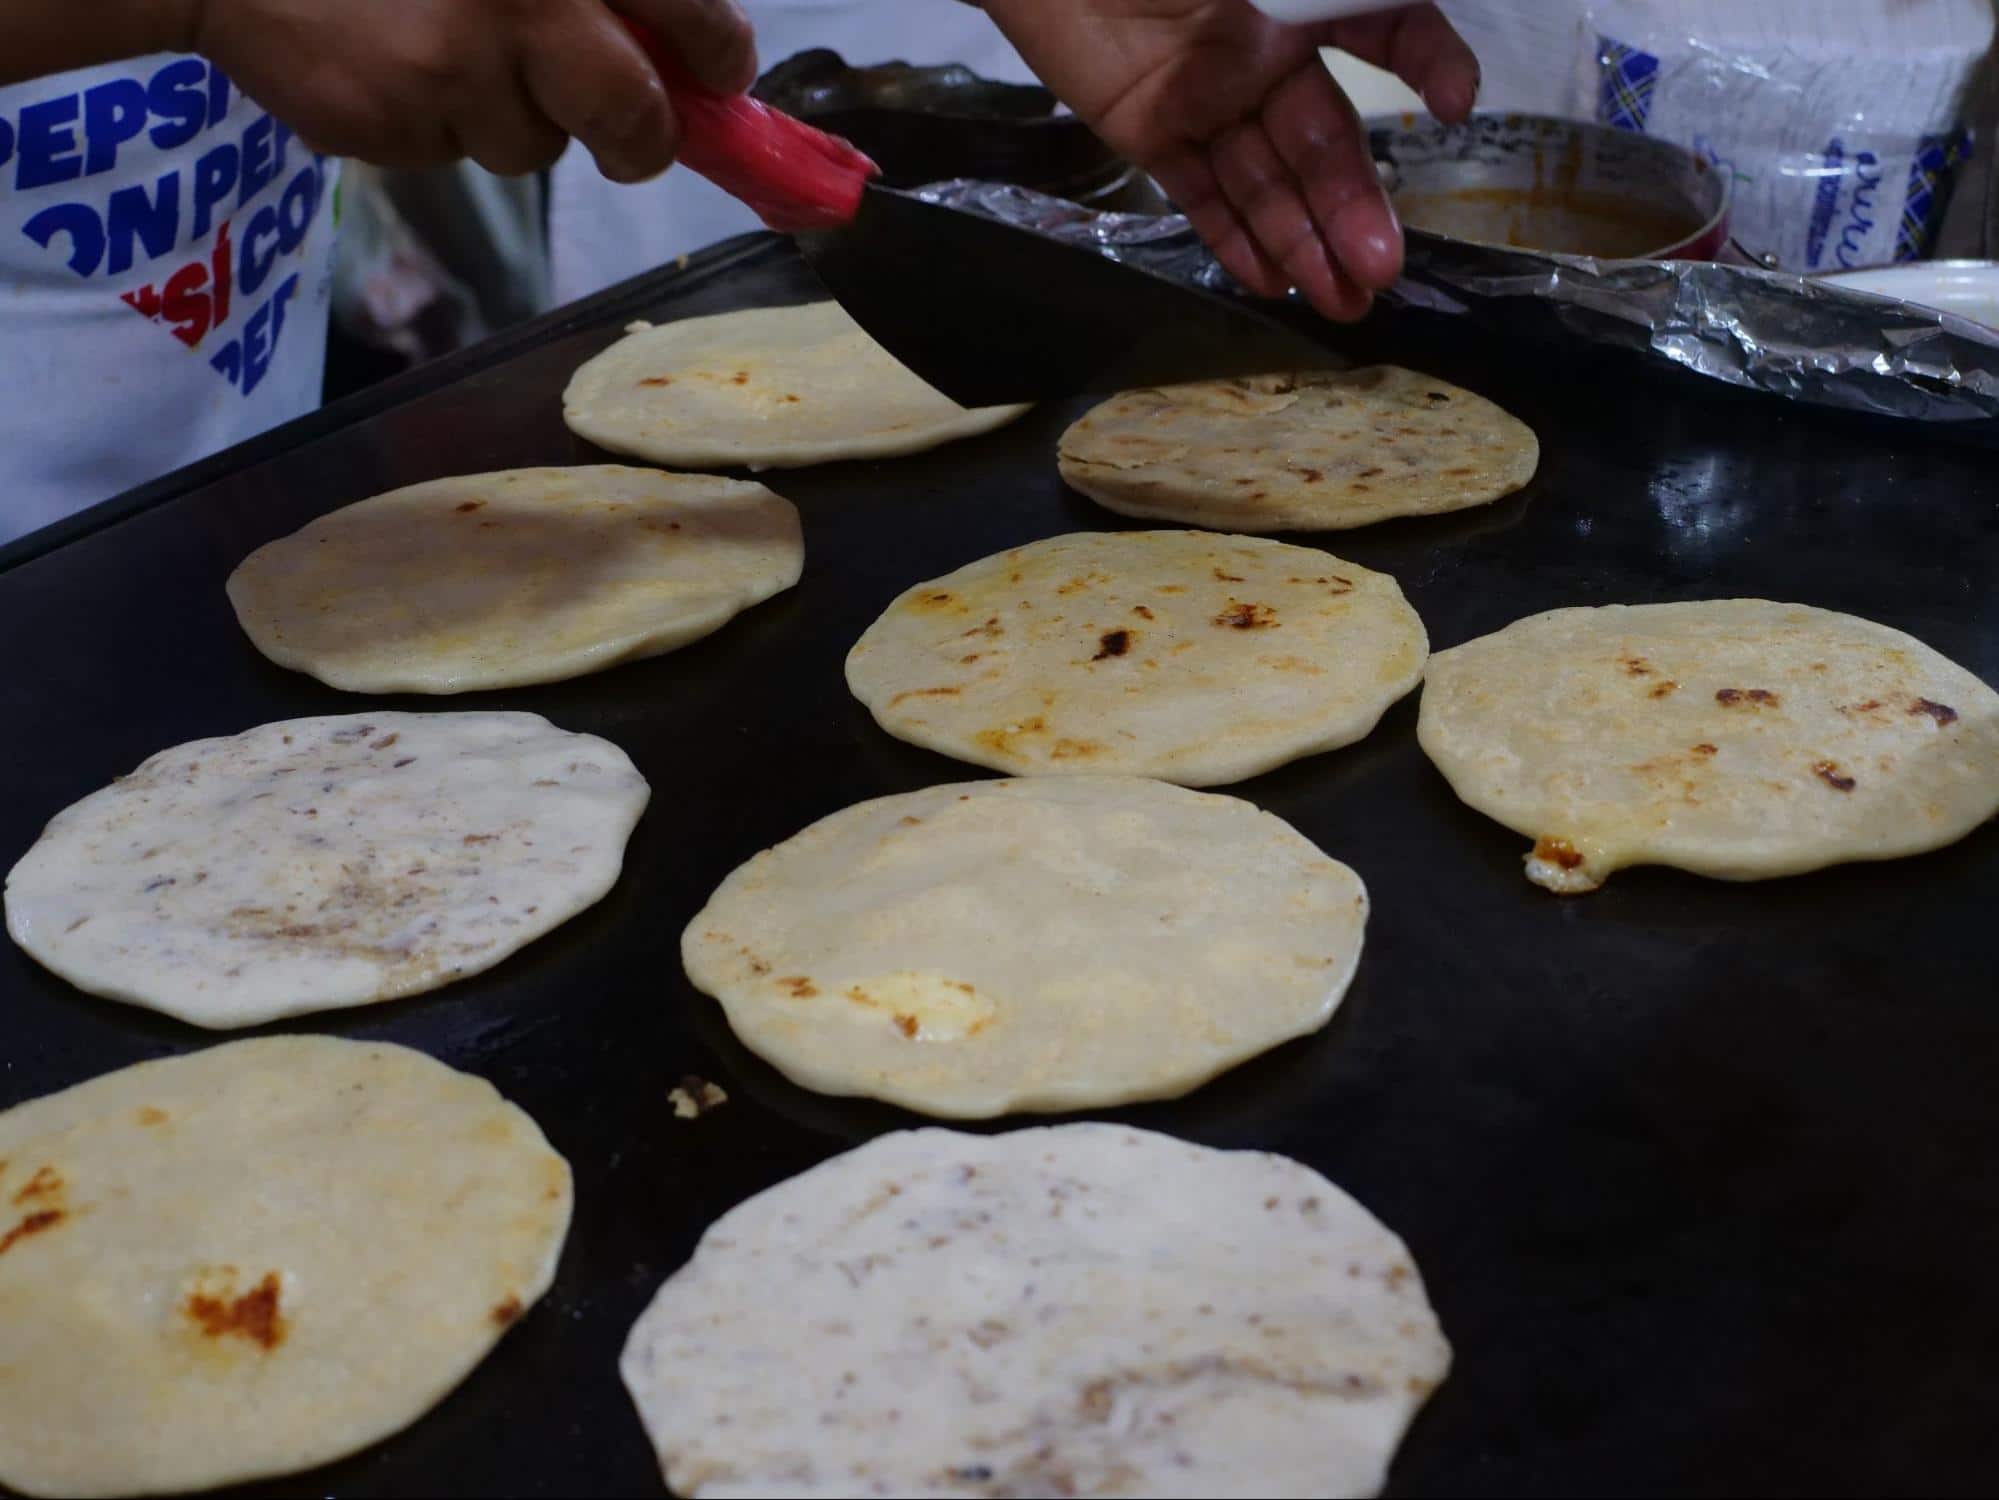 Pupusas, actually traditional Salvadorian food